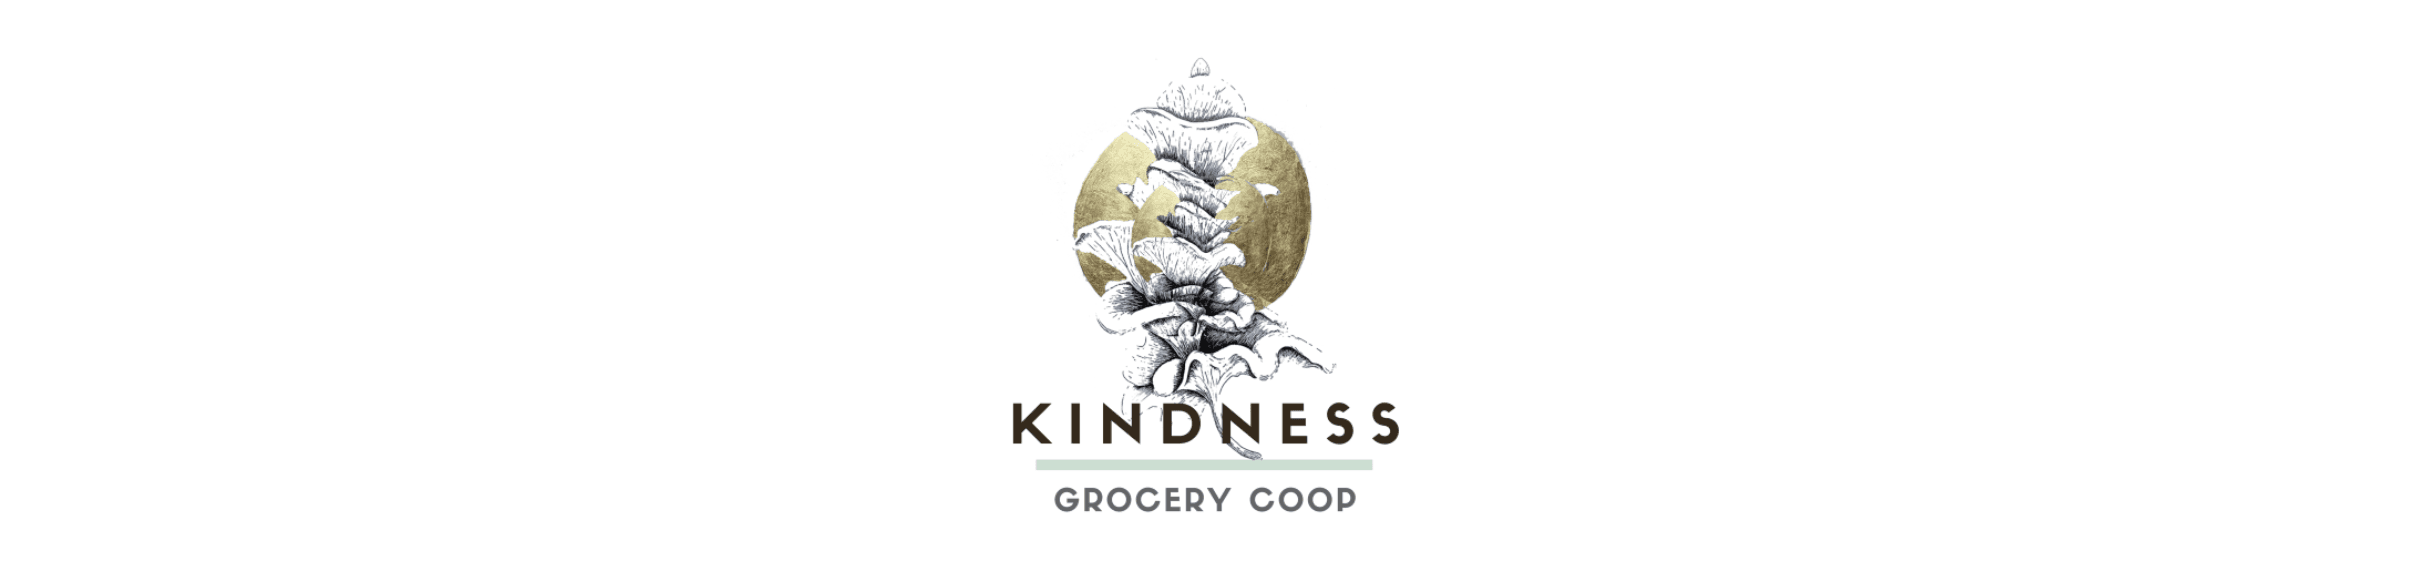 Kindnessgrocerycoop2021 バナー